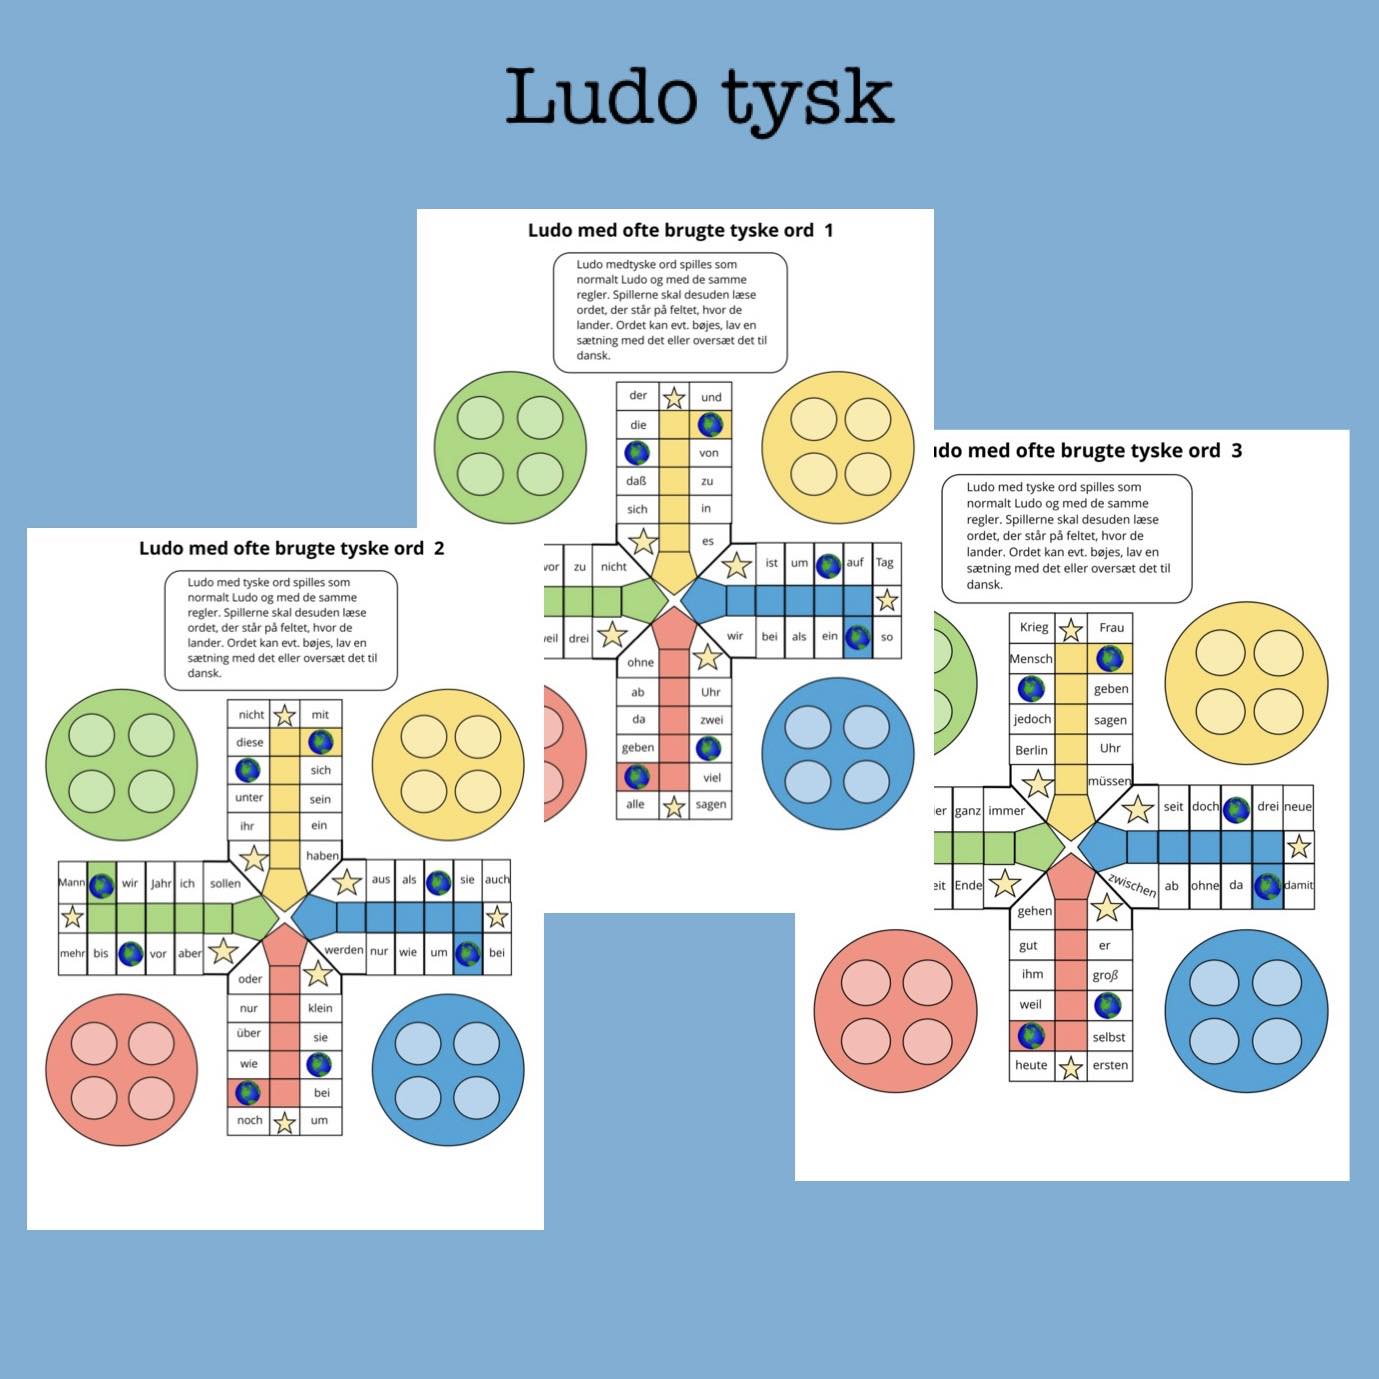 Se Ludo tysk - 3 spil (Print selv) hos Leg og Lektie